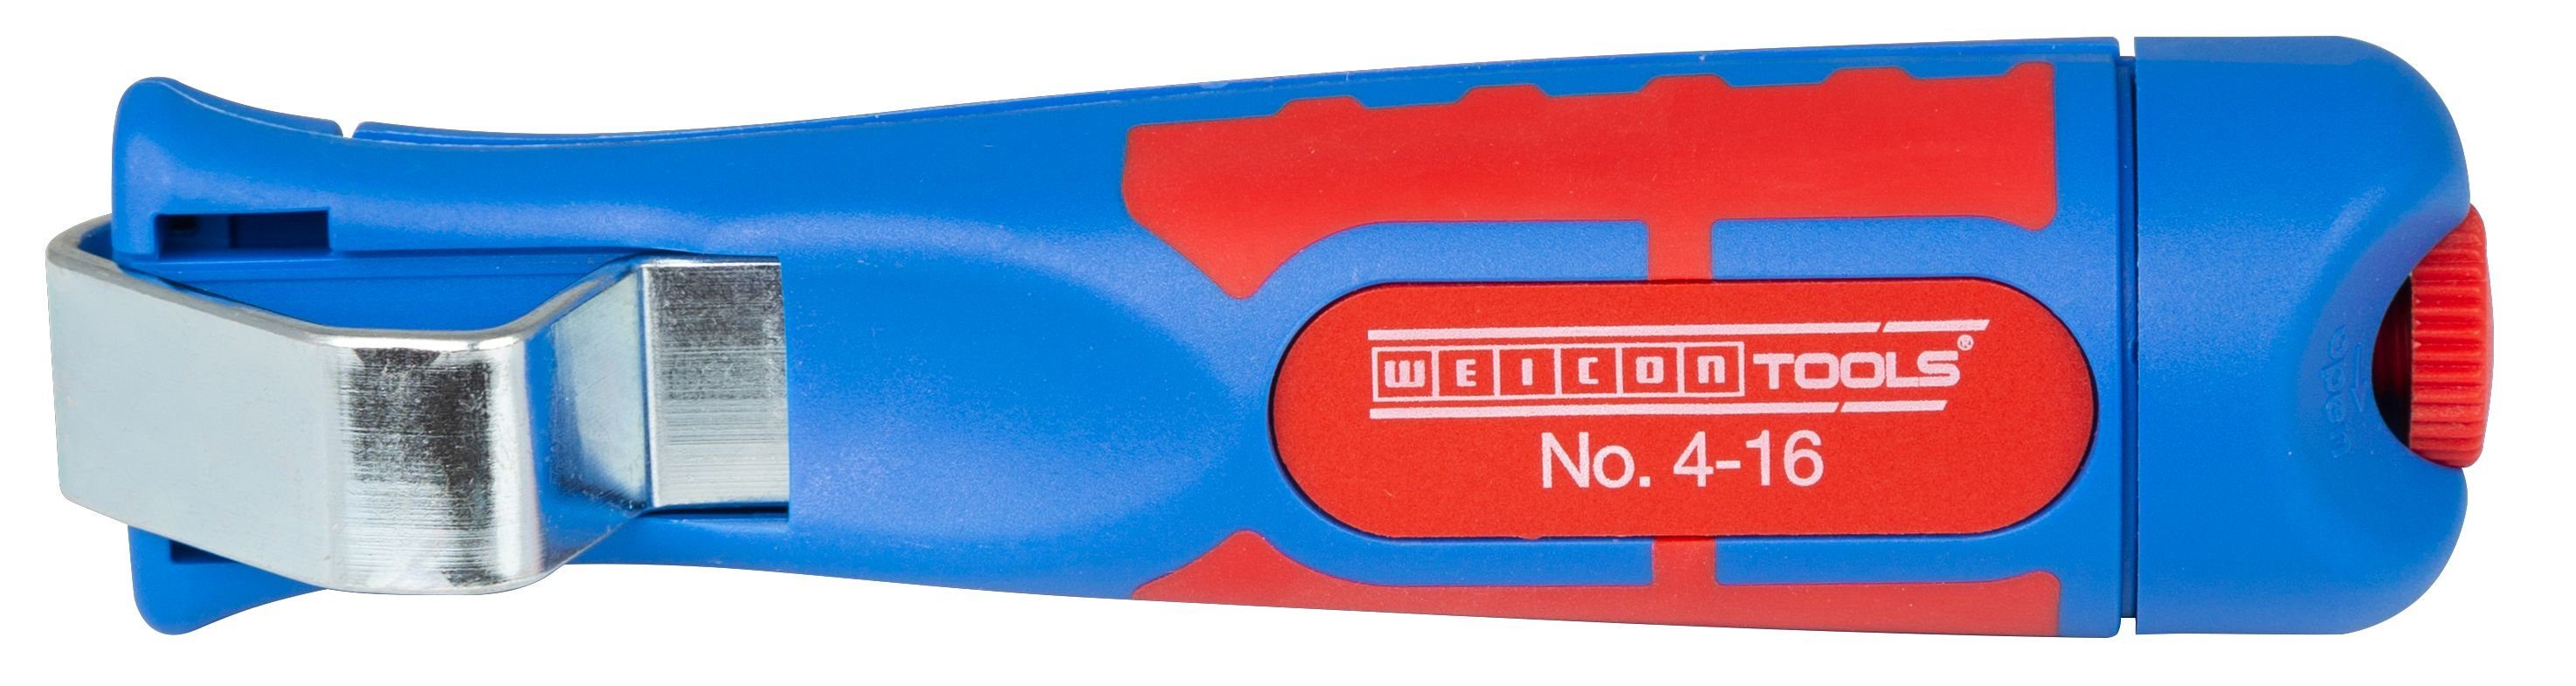 WEICON Kabelmesser Kabelmesser No. 4 - 16 mm Ø mit 2-Komponenten-Griff, (1-tlg)